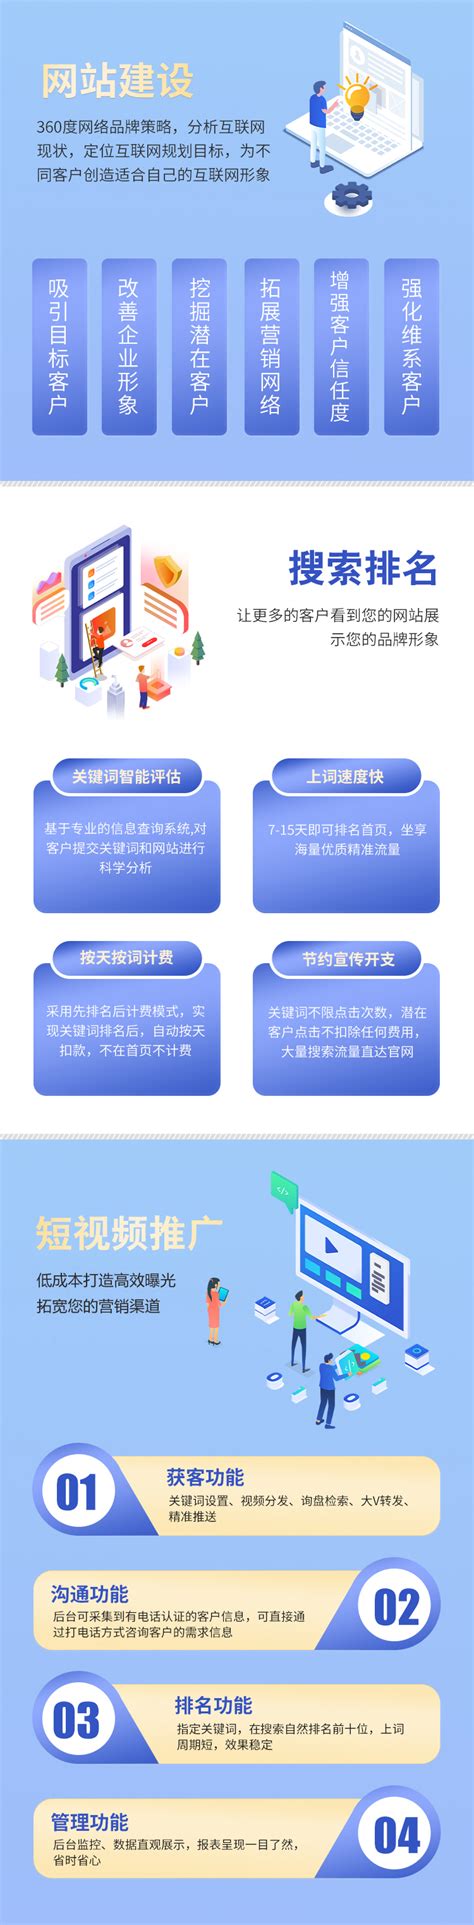 重庆网站建设的关键事项